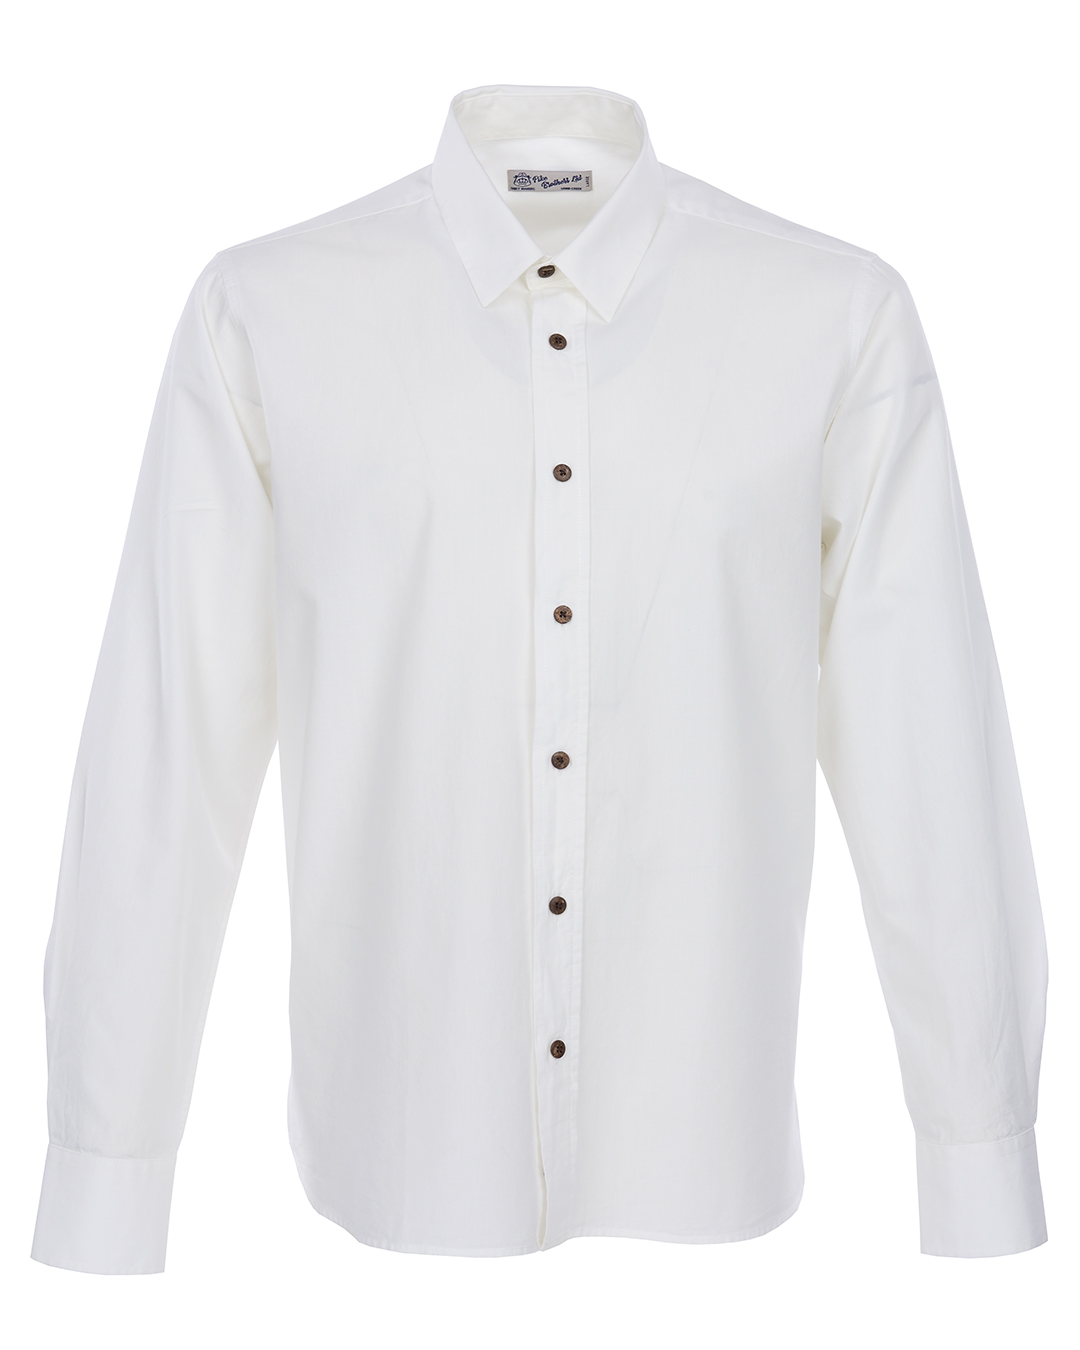 1954 Oxford Shirt white chambray